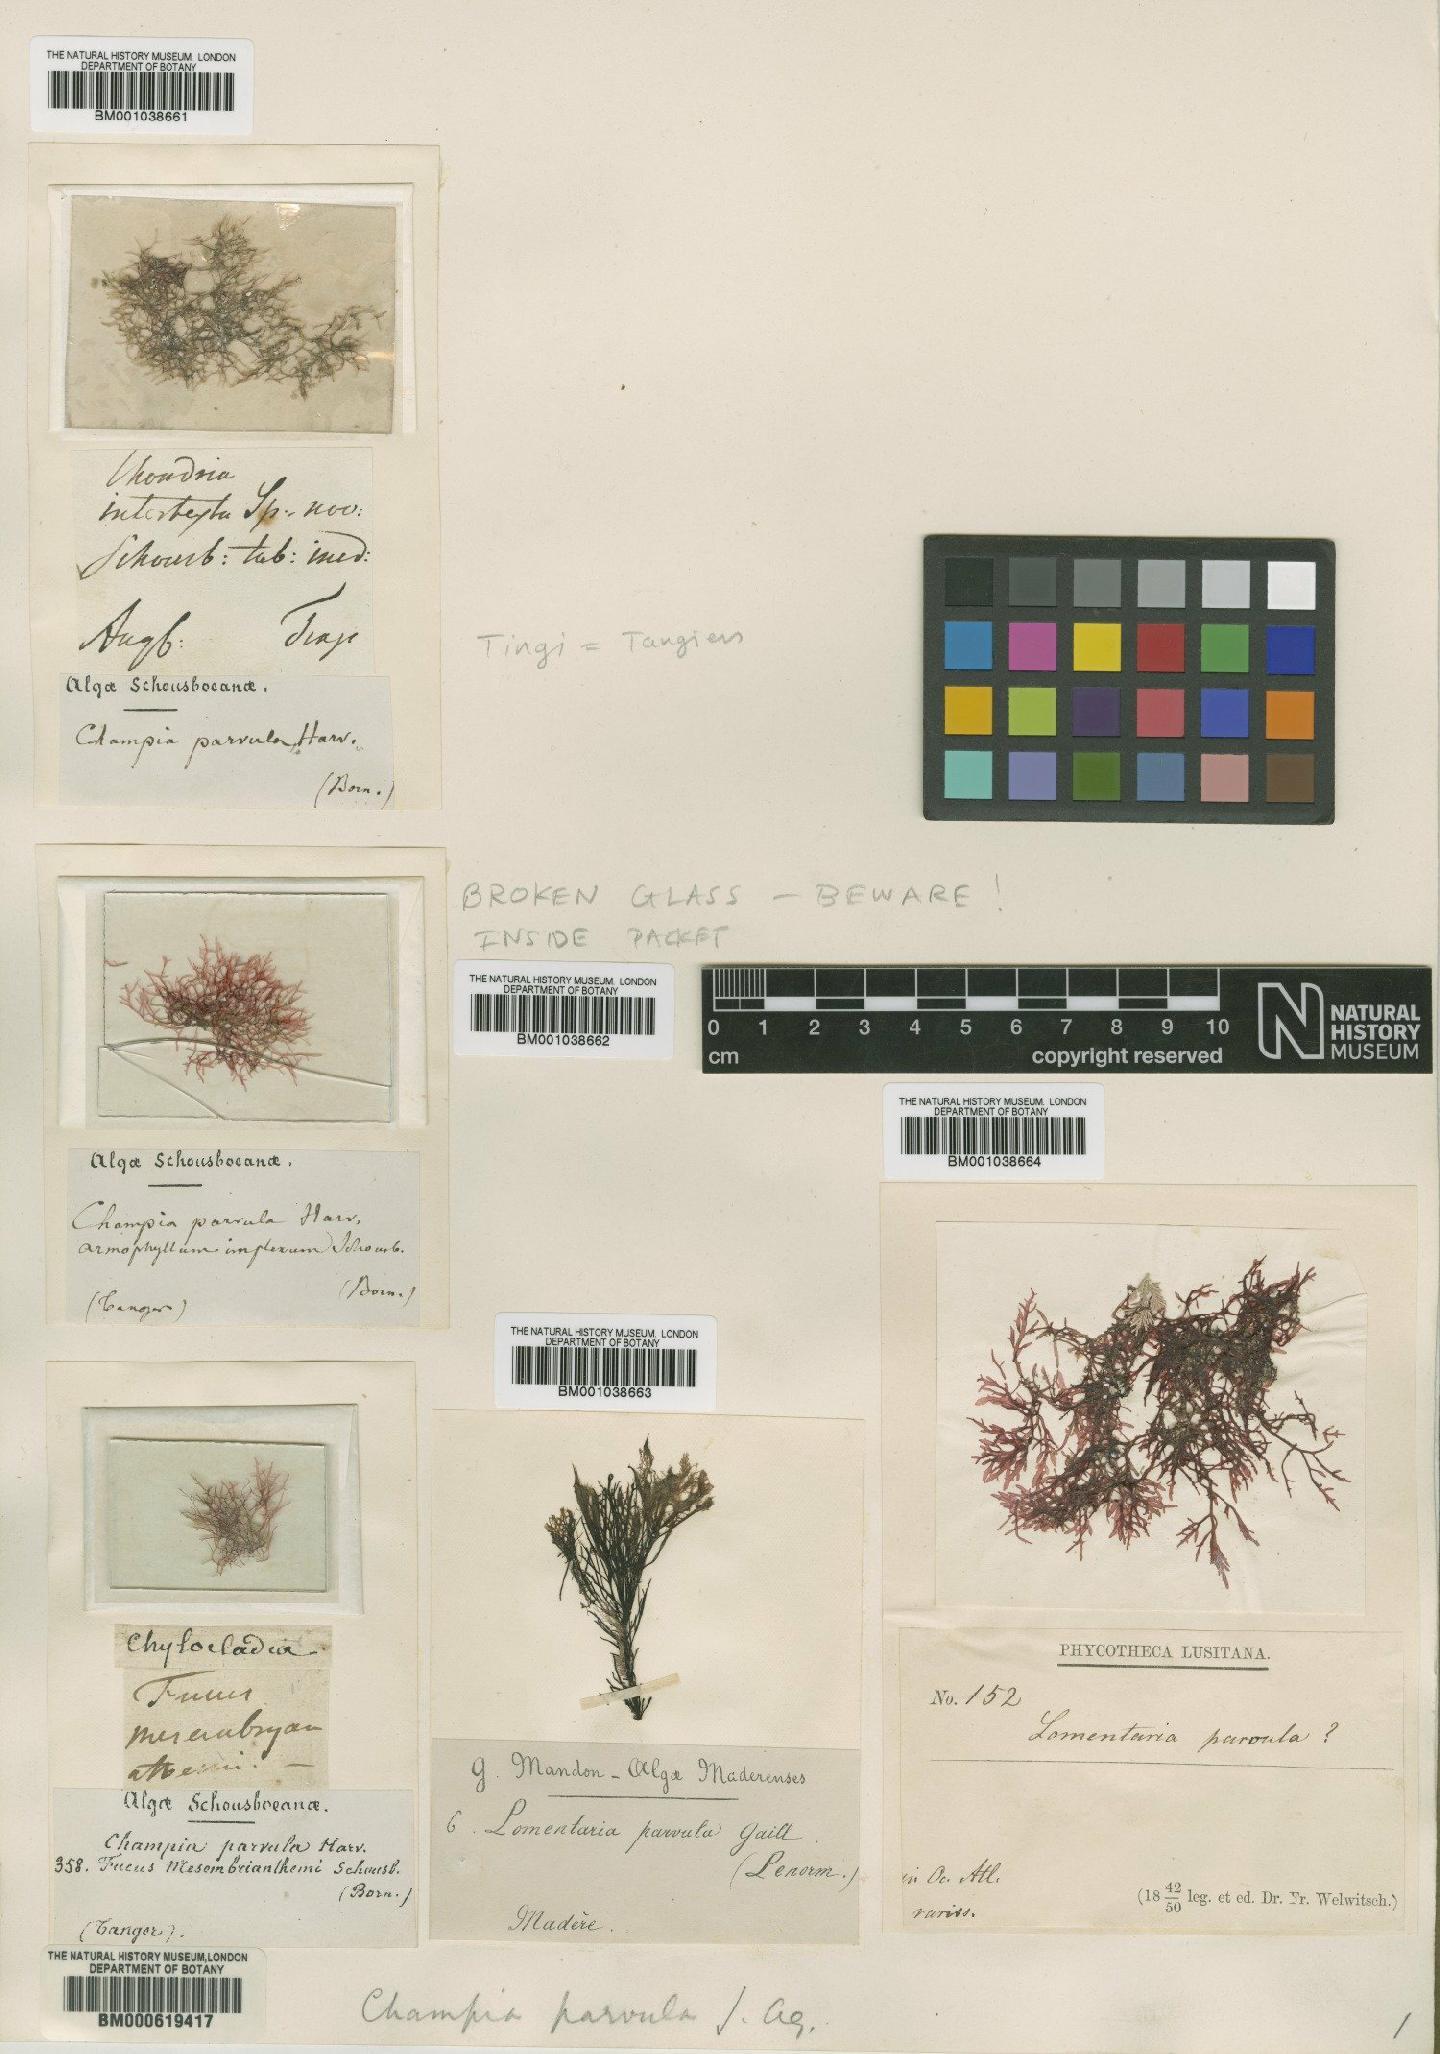 To NHMUK collection (Champia parvula (C.Agardh) Harv.; Non-Type; NHMUK:ecatalogue:631546)